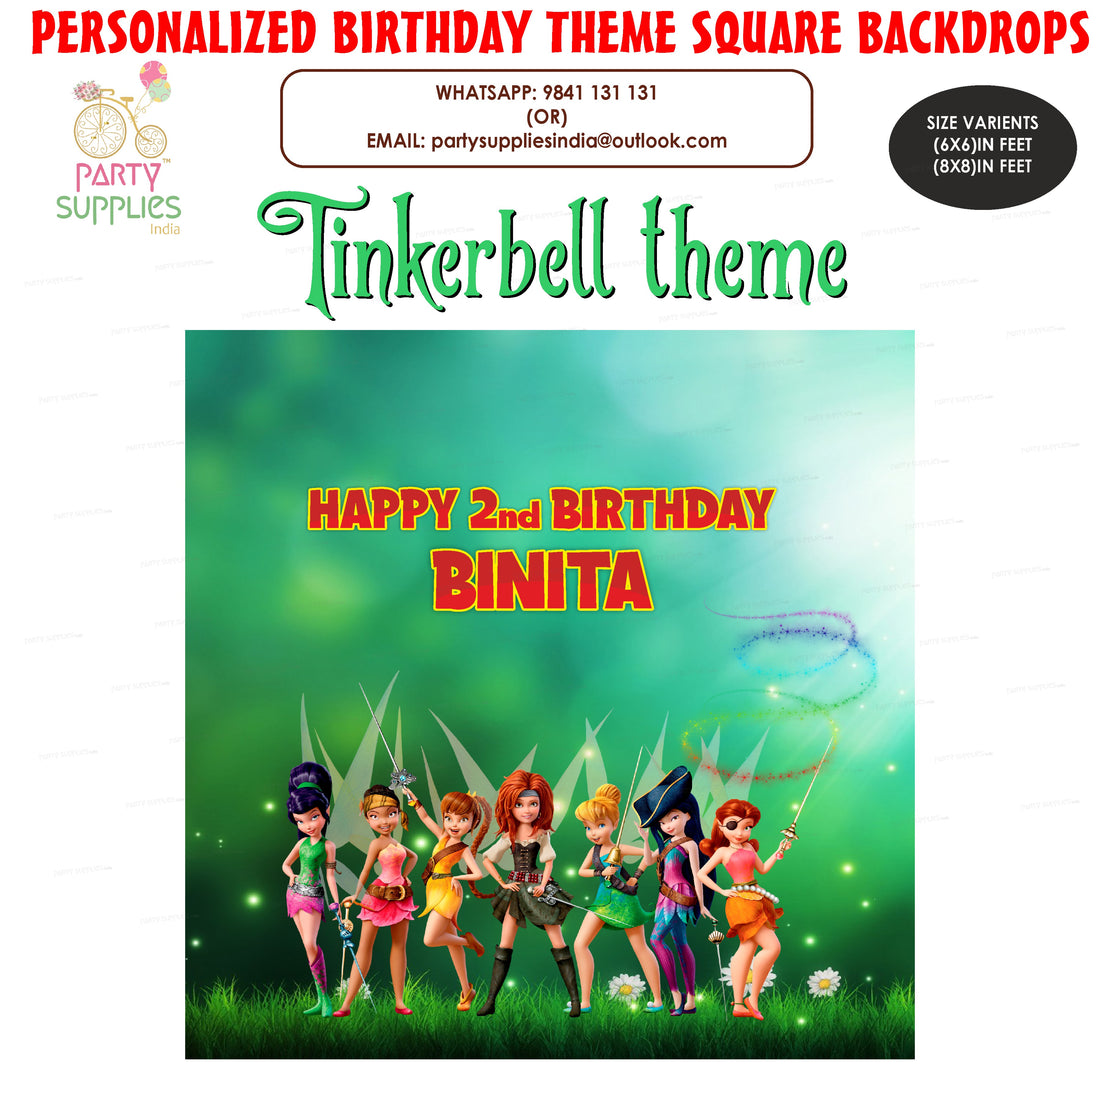 Tinker Bell Theme Premium Square Backdrop